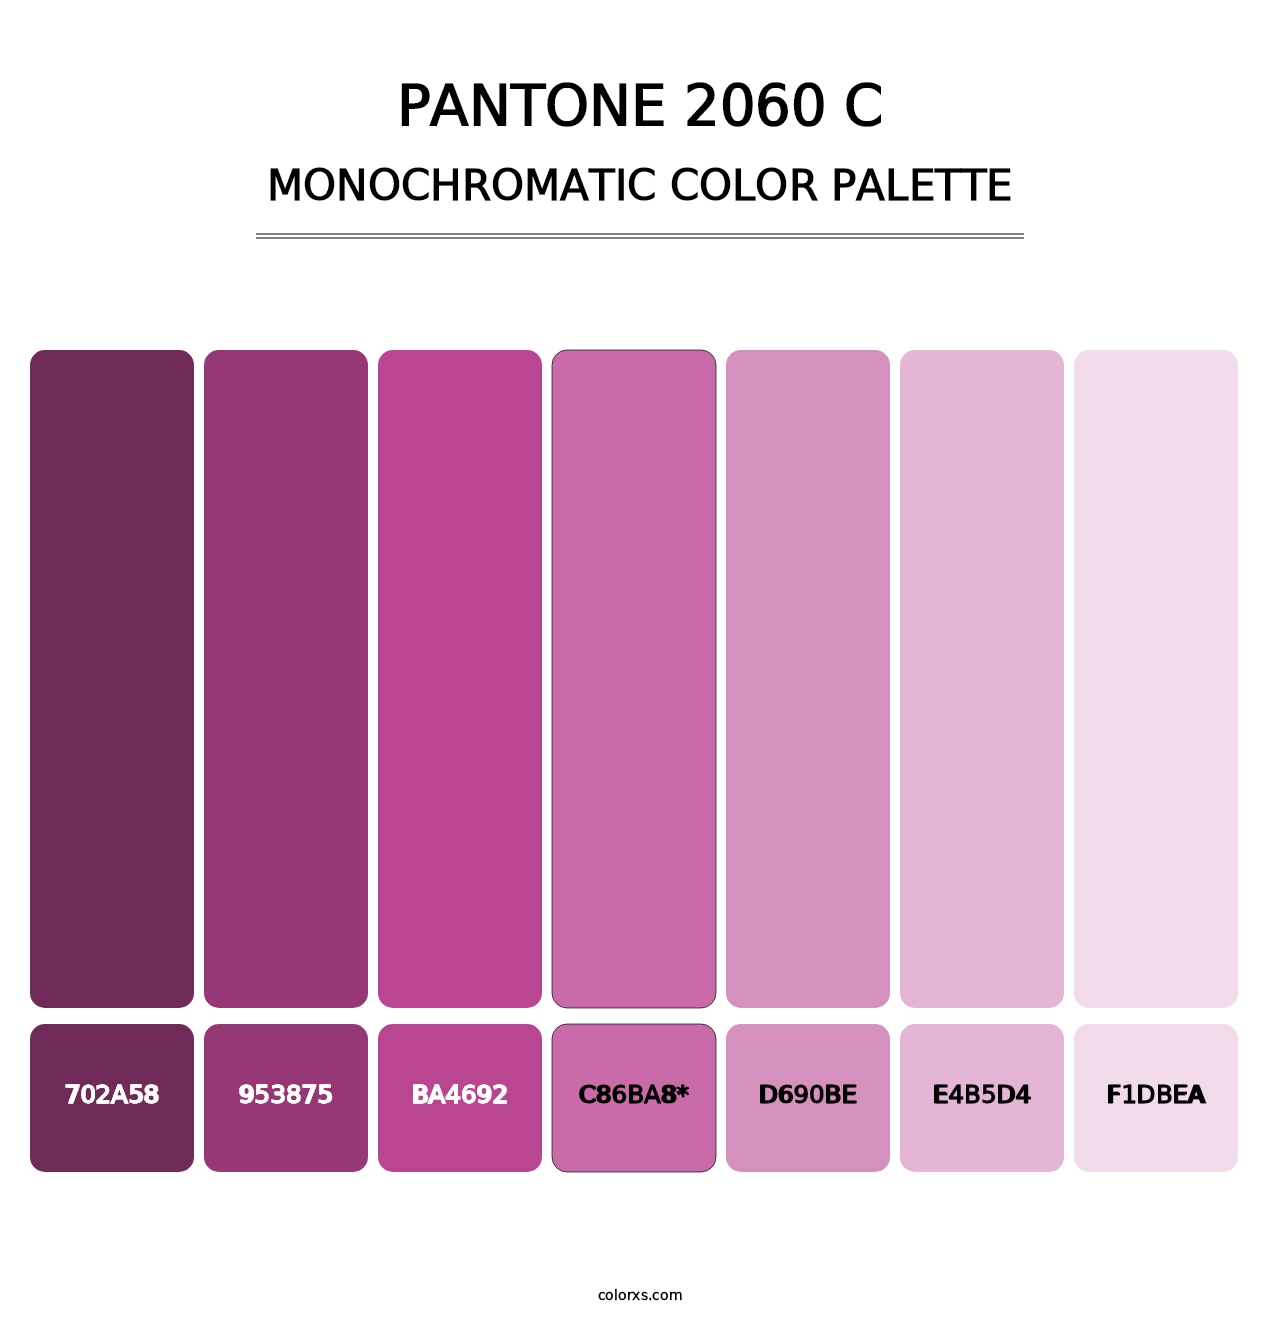 PANTONE 2060 C - Monochromatic Color Palette